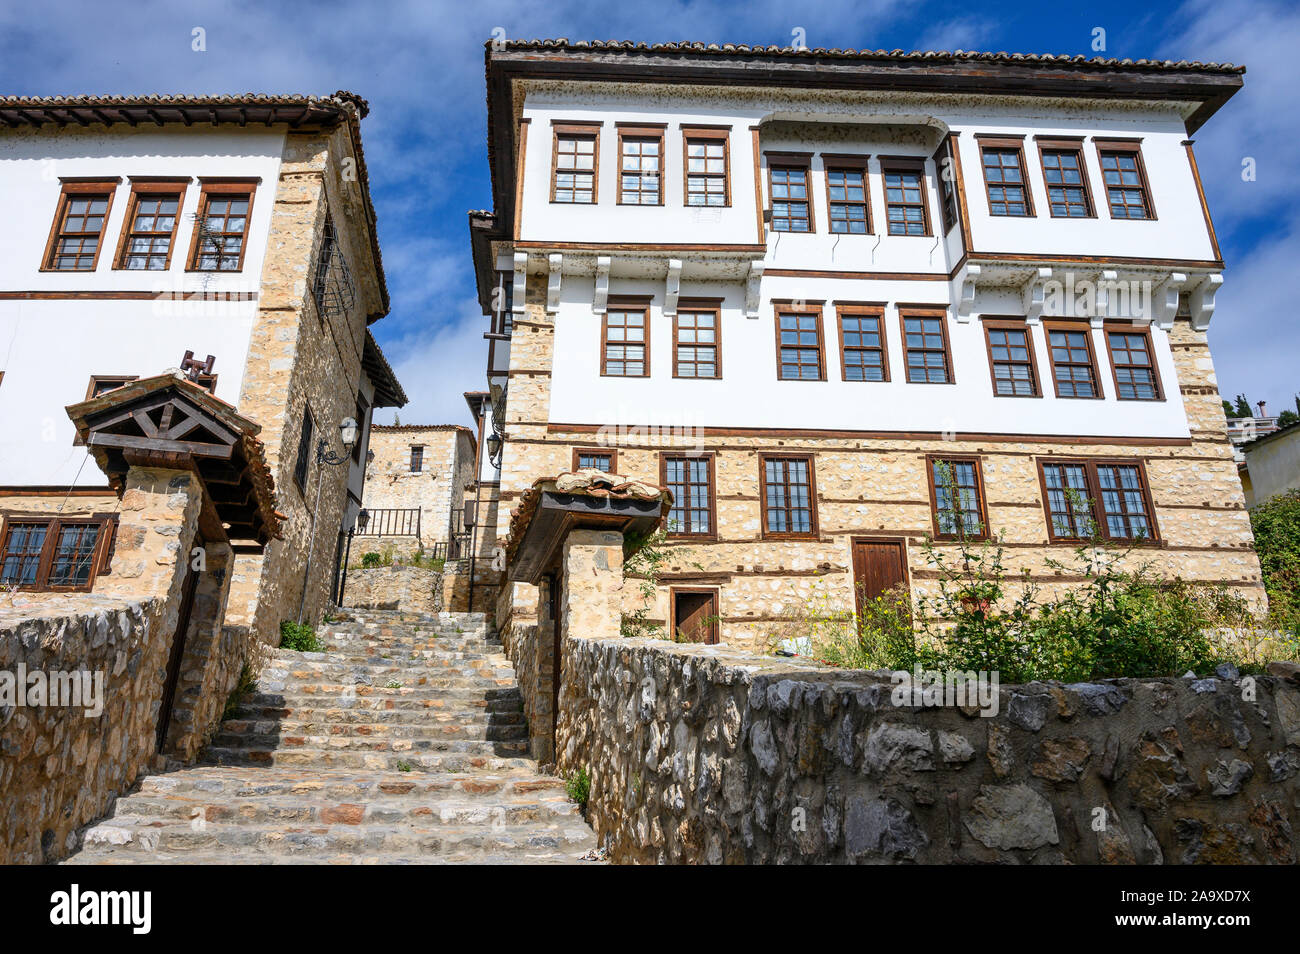 Vecchi palazzi ottomani e strade di ciottoli nel vecchio quartiere Doltso di Kastoria, Macedonia, Grecia settentrionale. Foto Stock